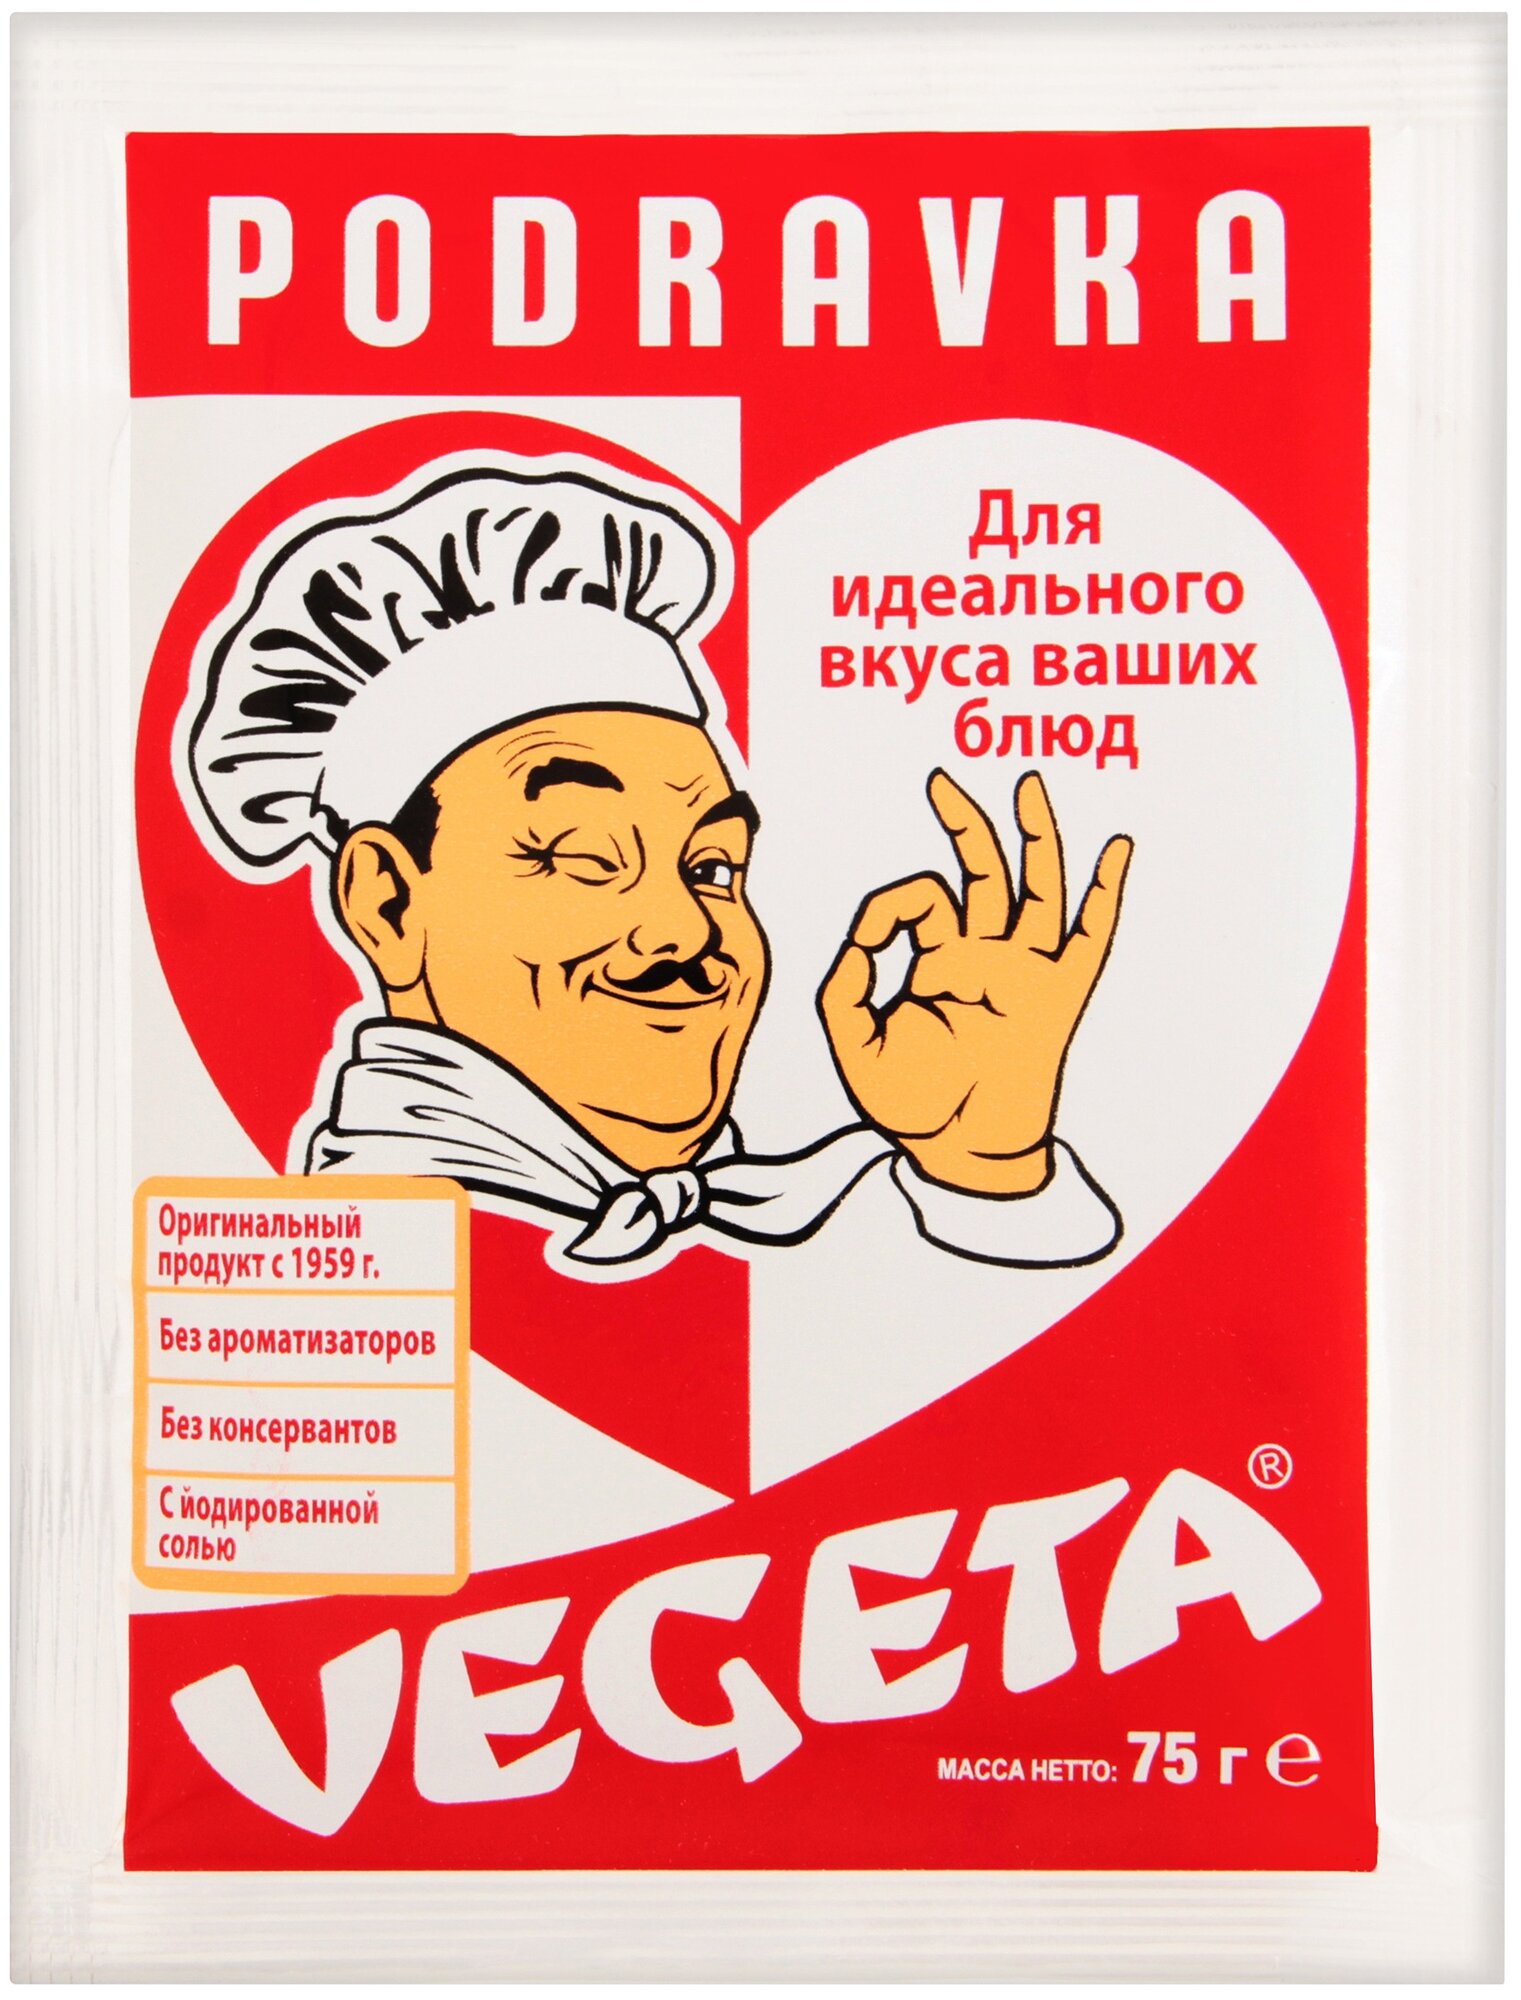 Vegeta Приправа универсальная с овощами, 75 г, пакет